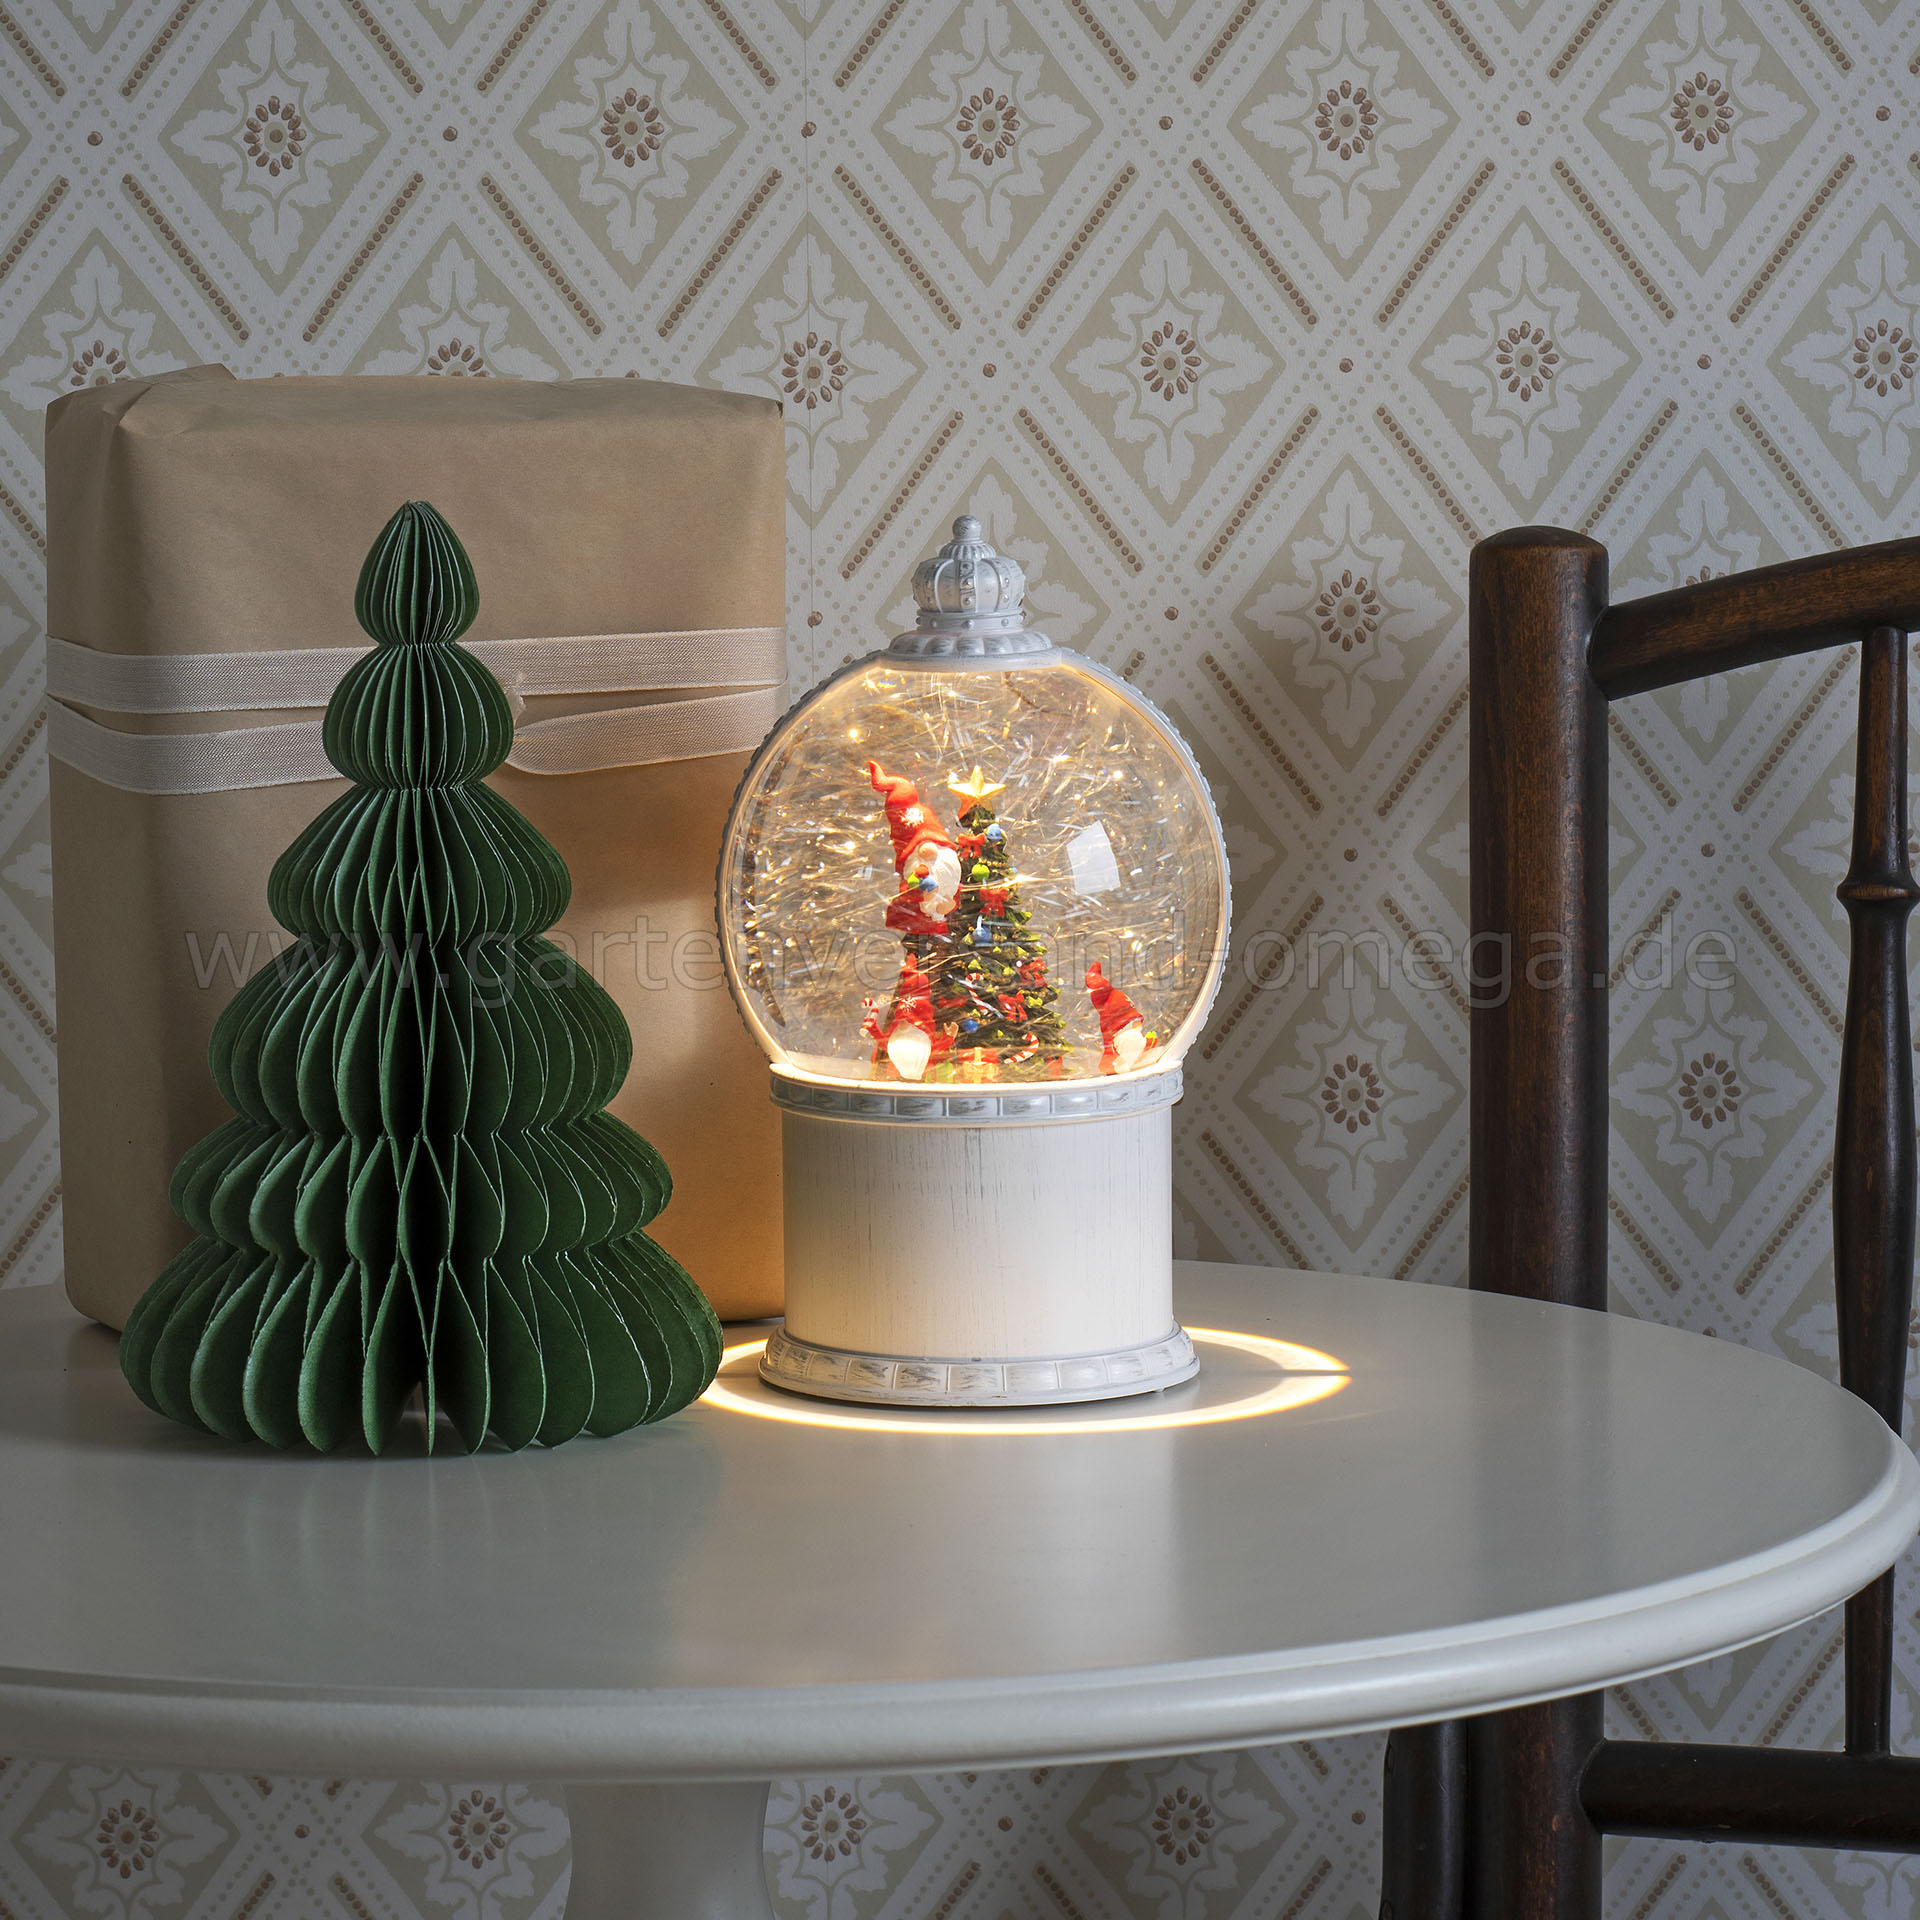 LED-Kugellaterne Wichtel mit Christbaum - Weihnachtsbeleuchtung wie  Schneekugel, Schneekugel-Dekoration Weihnachtswichtel, LED Kugellaterne  Santas, Schneekugel-Laterne, wassergefüllte Weihnachtsbeleuchtung